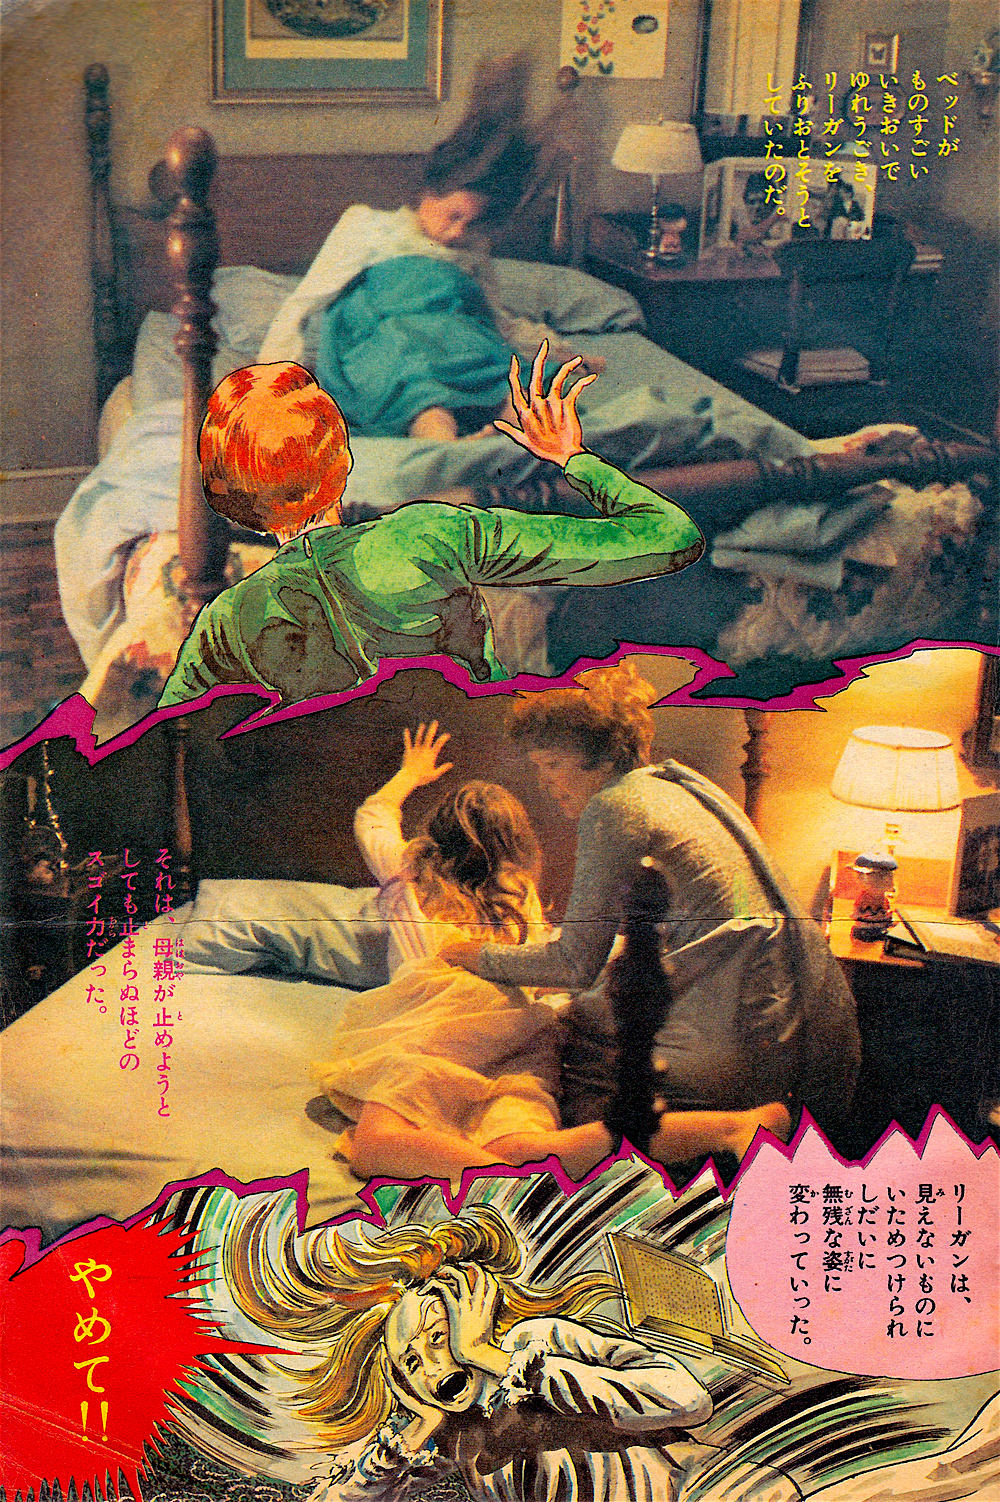 Kazuo Umezu - The Exorcist Comic, 1974, Page 03